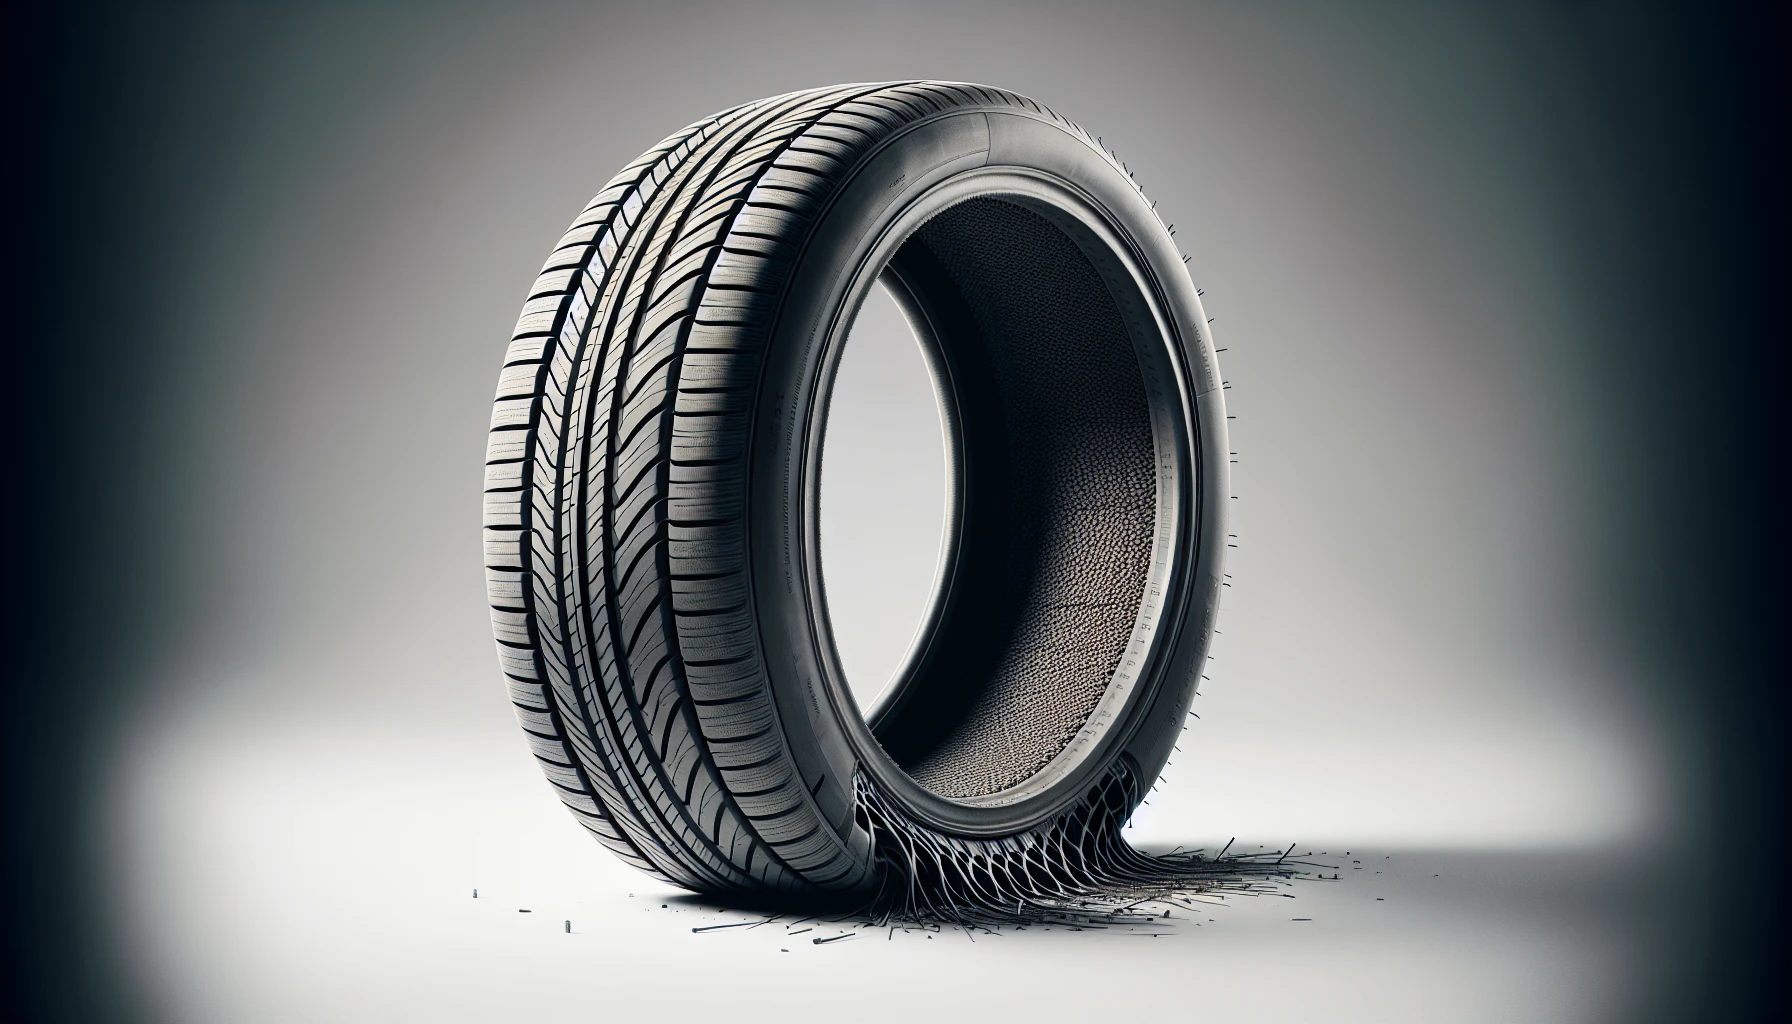 Illustration of reinforced sidewalls in run flat tyre